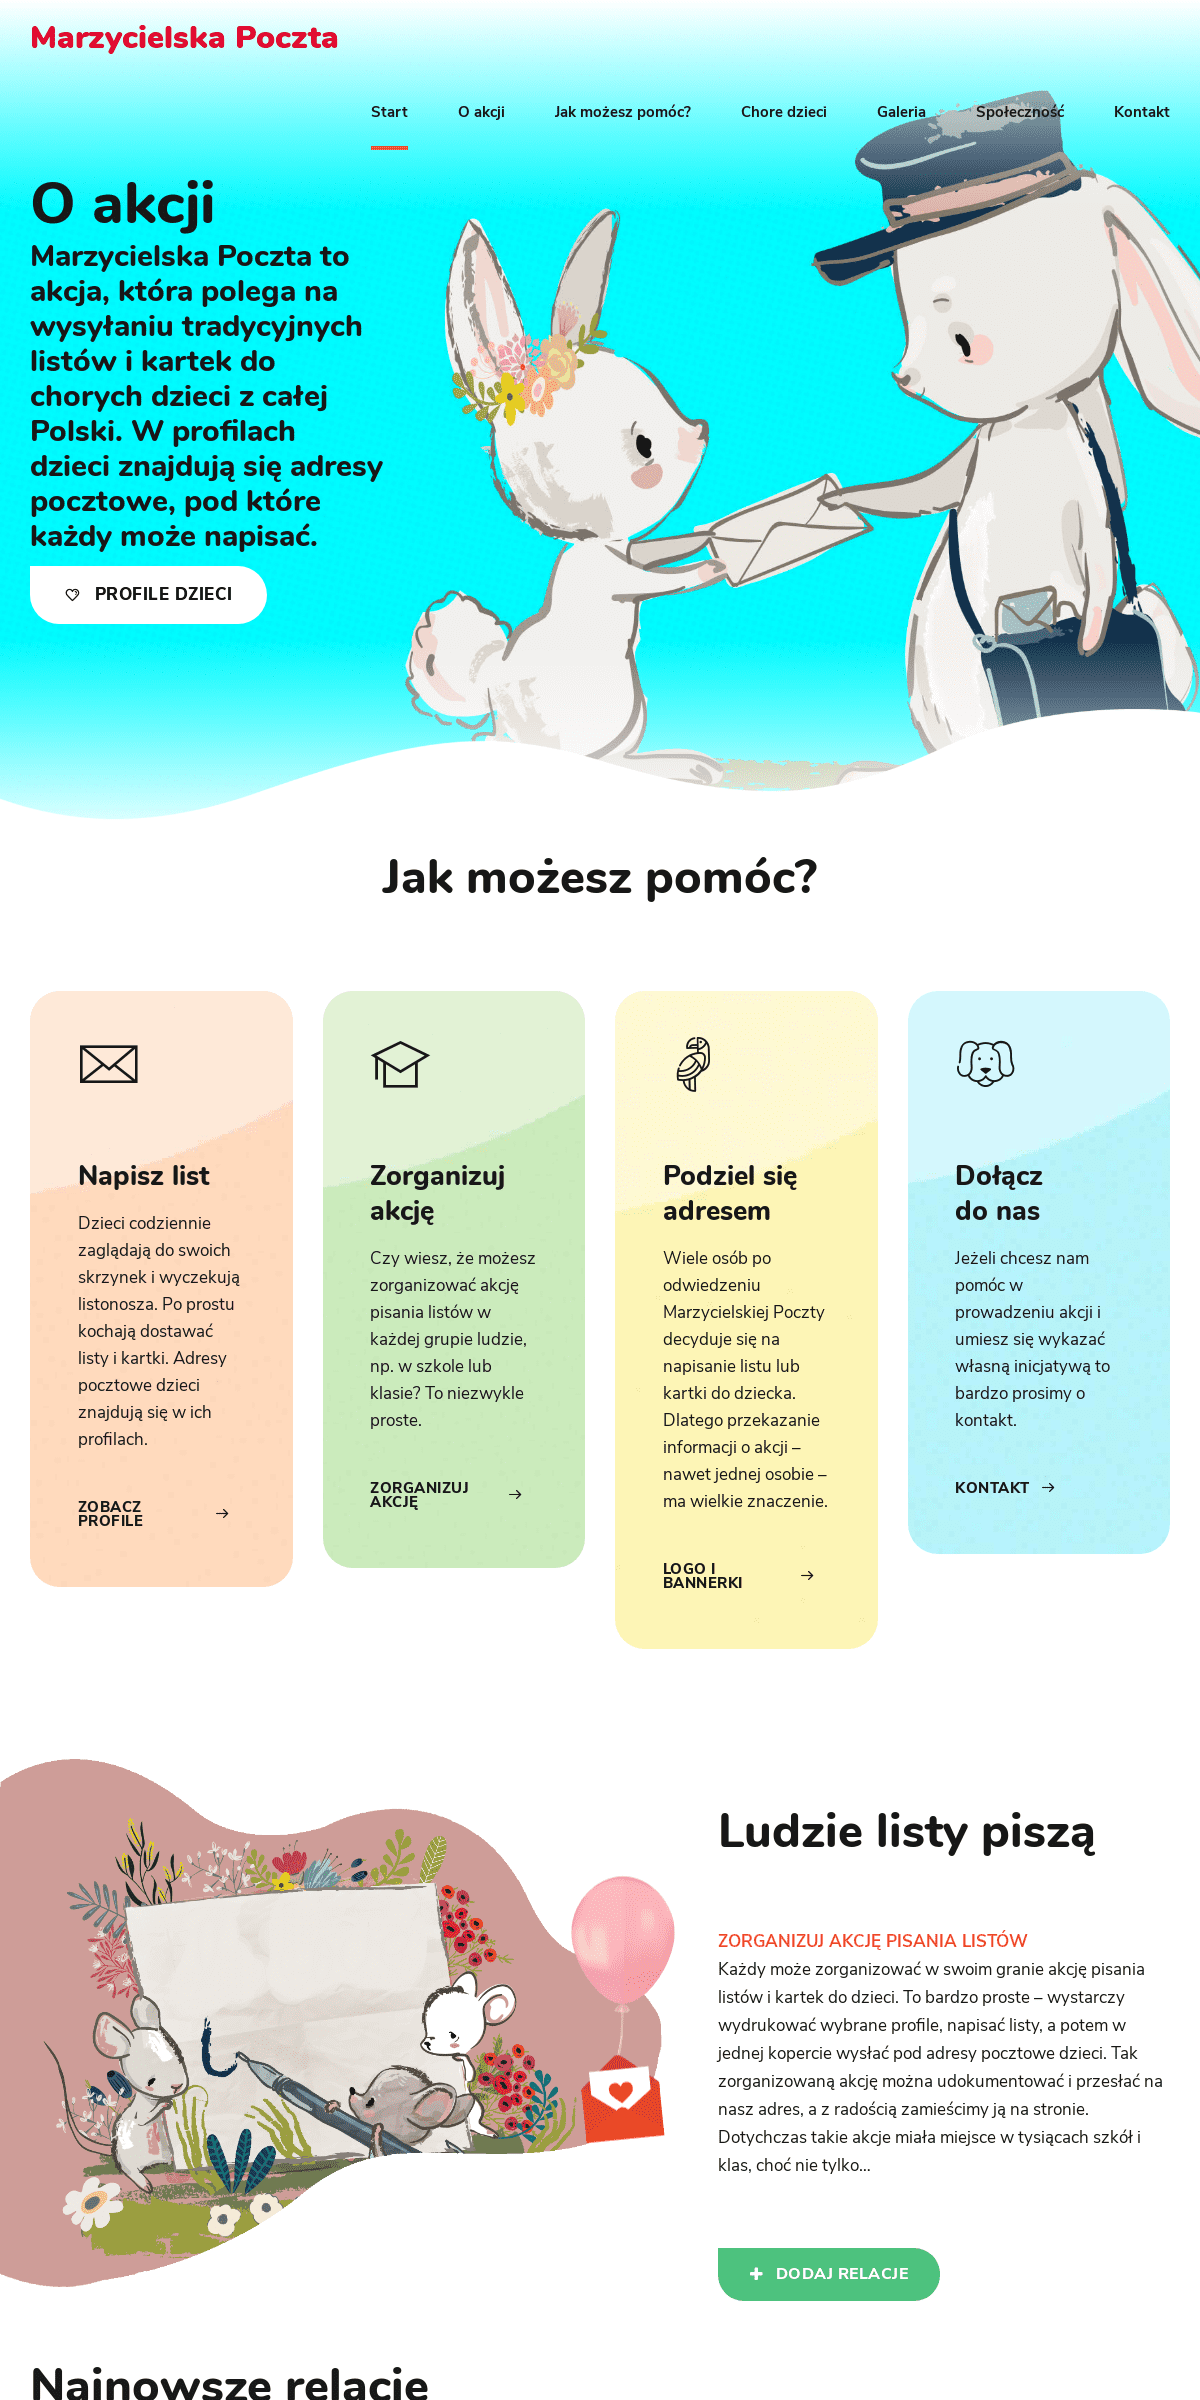 A complete backup of marzycielskapoczta.pl